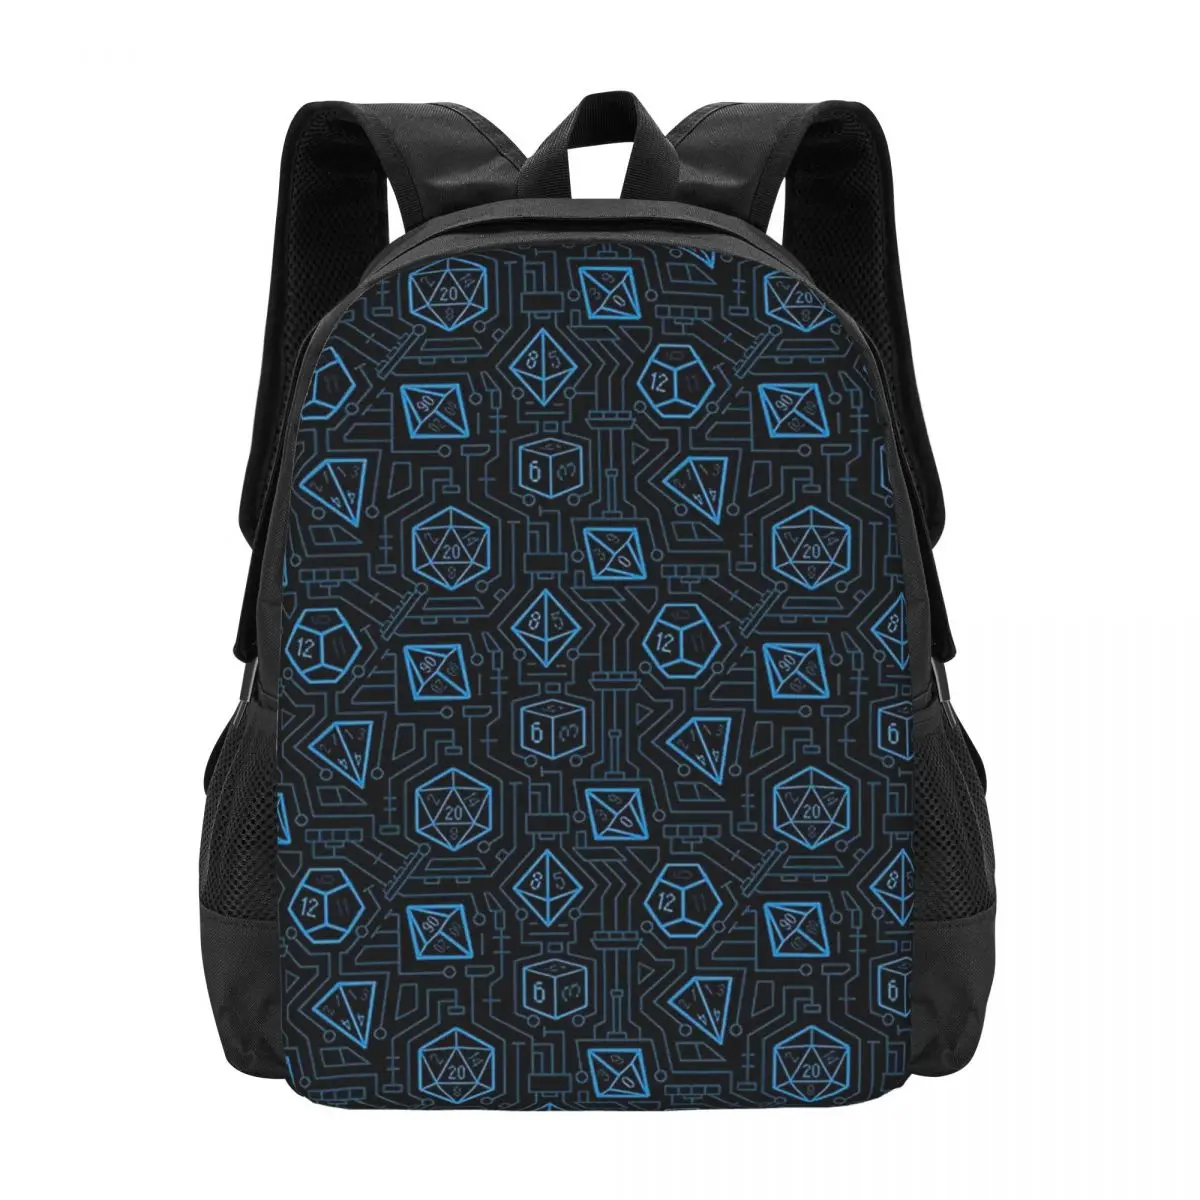 Tech D20 Pattern Backpack for Girls Boys Travel RucksackBackpacks for Teenage school bag